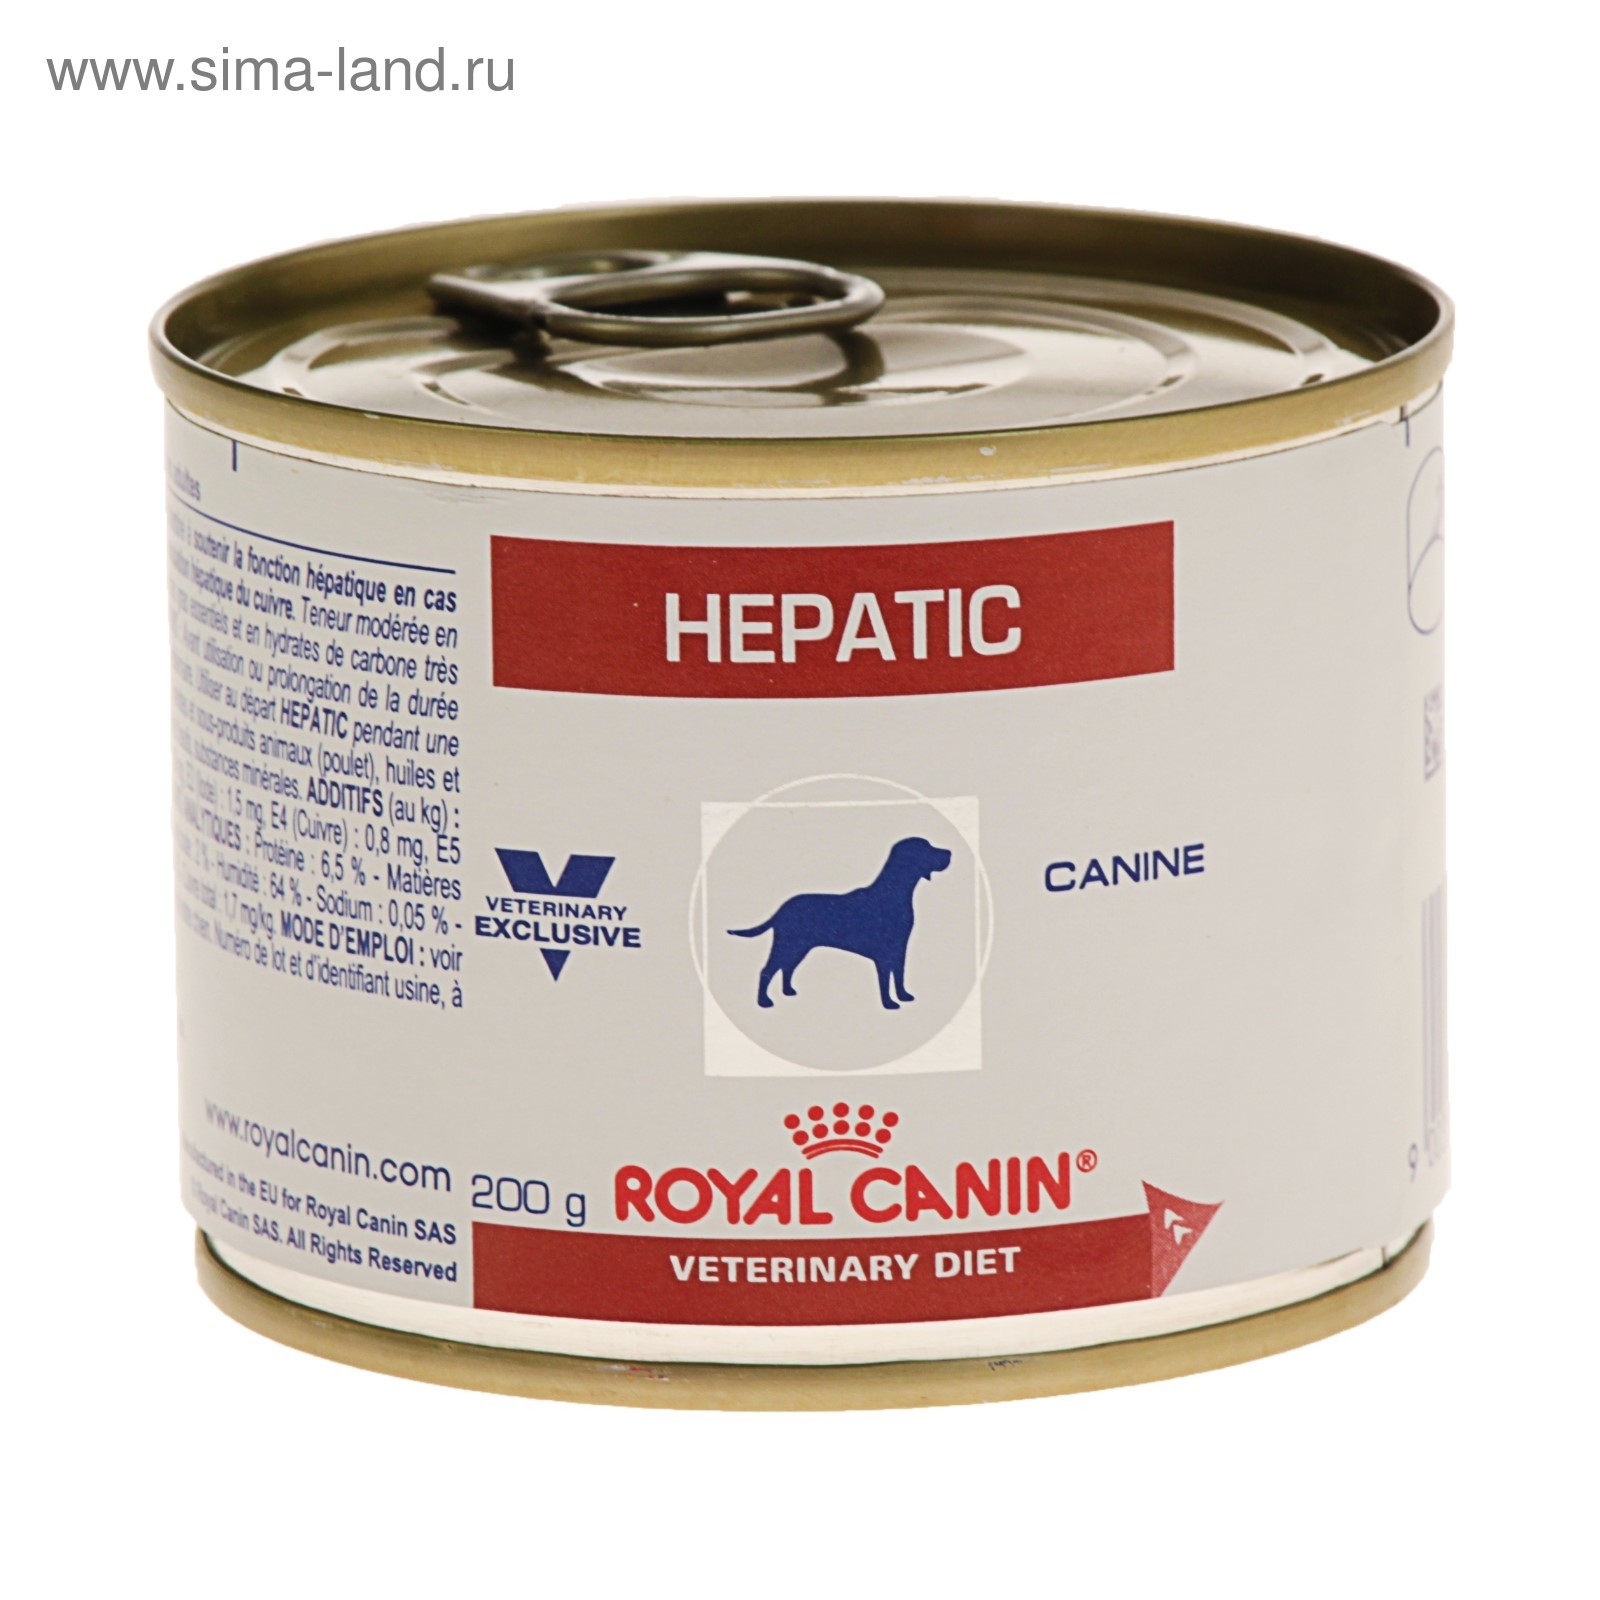 Влажный корм для собак royal canin. Роял Канин Гепатик консервы. Роял Канин Гепатик для собак консервы. Royal Canin hepatic для собак консервы. Royal Canin Gastro intestinal для собак консервы.